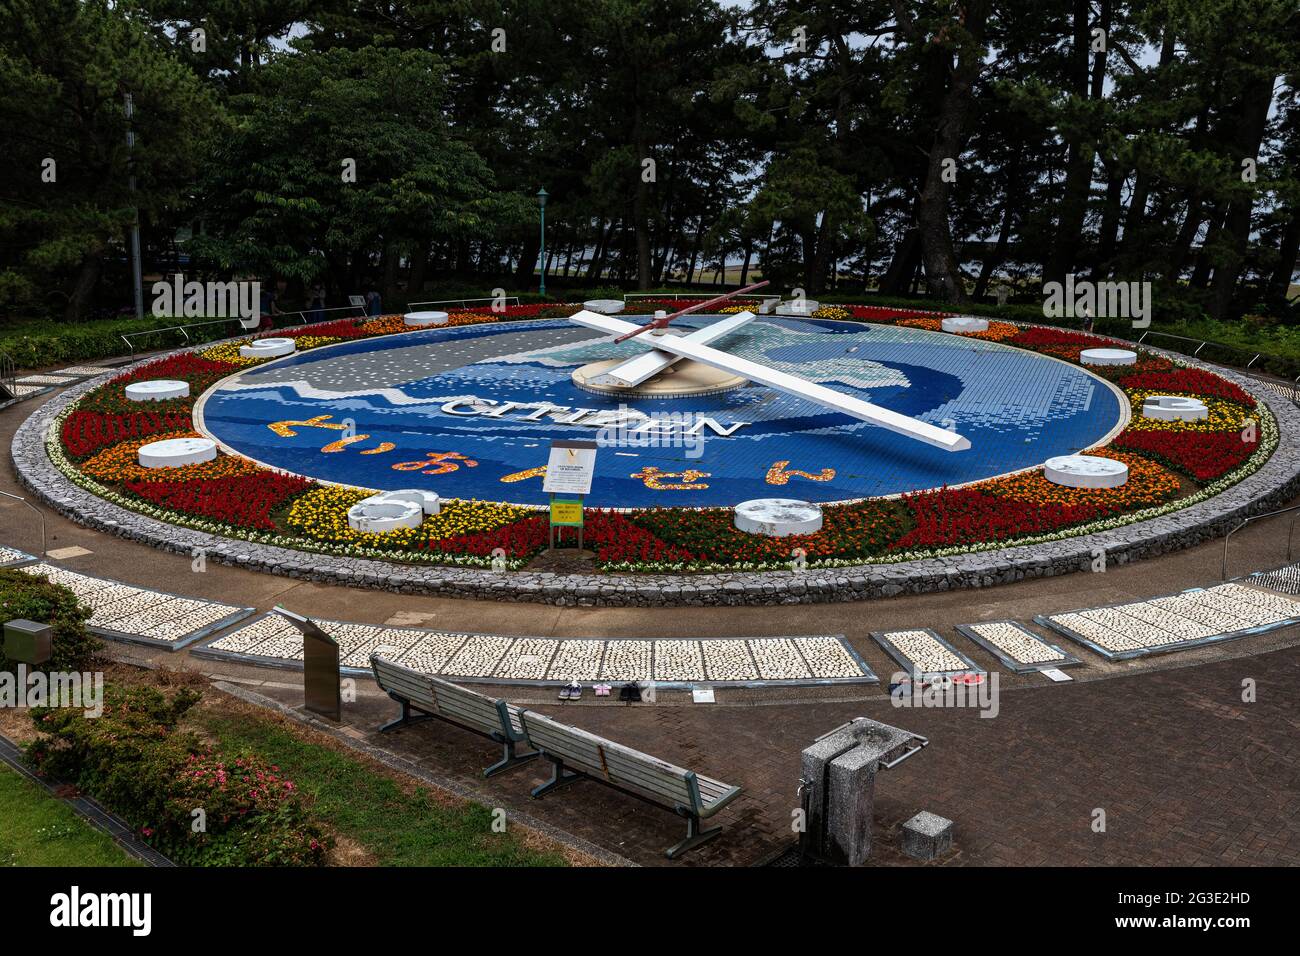 L'horloge à fleurs de toi est à l'intérieur du parc Matsubara à toi, Izu. L'horloge a été achevée en 1991 et reconnue comme la plus grande horloge florale du monde dans le G Banque D'Images